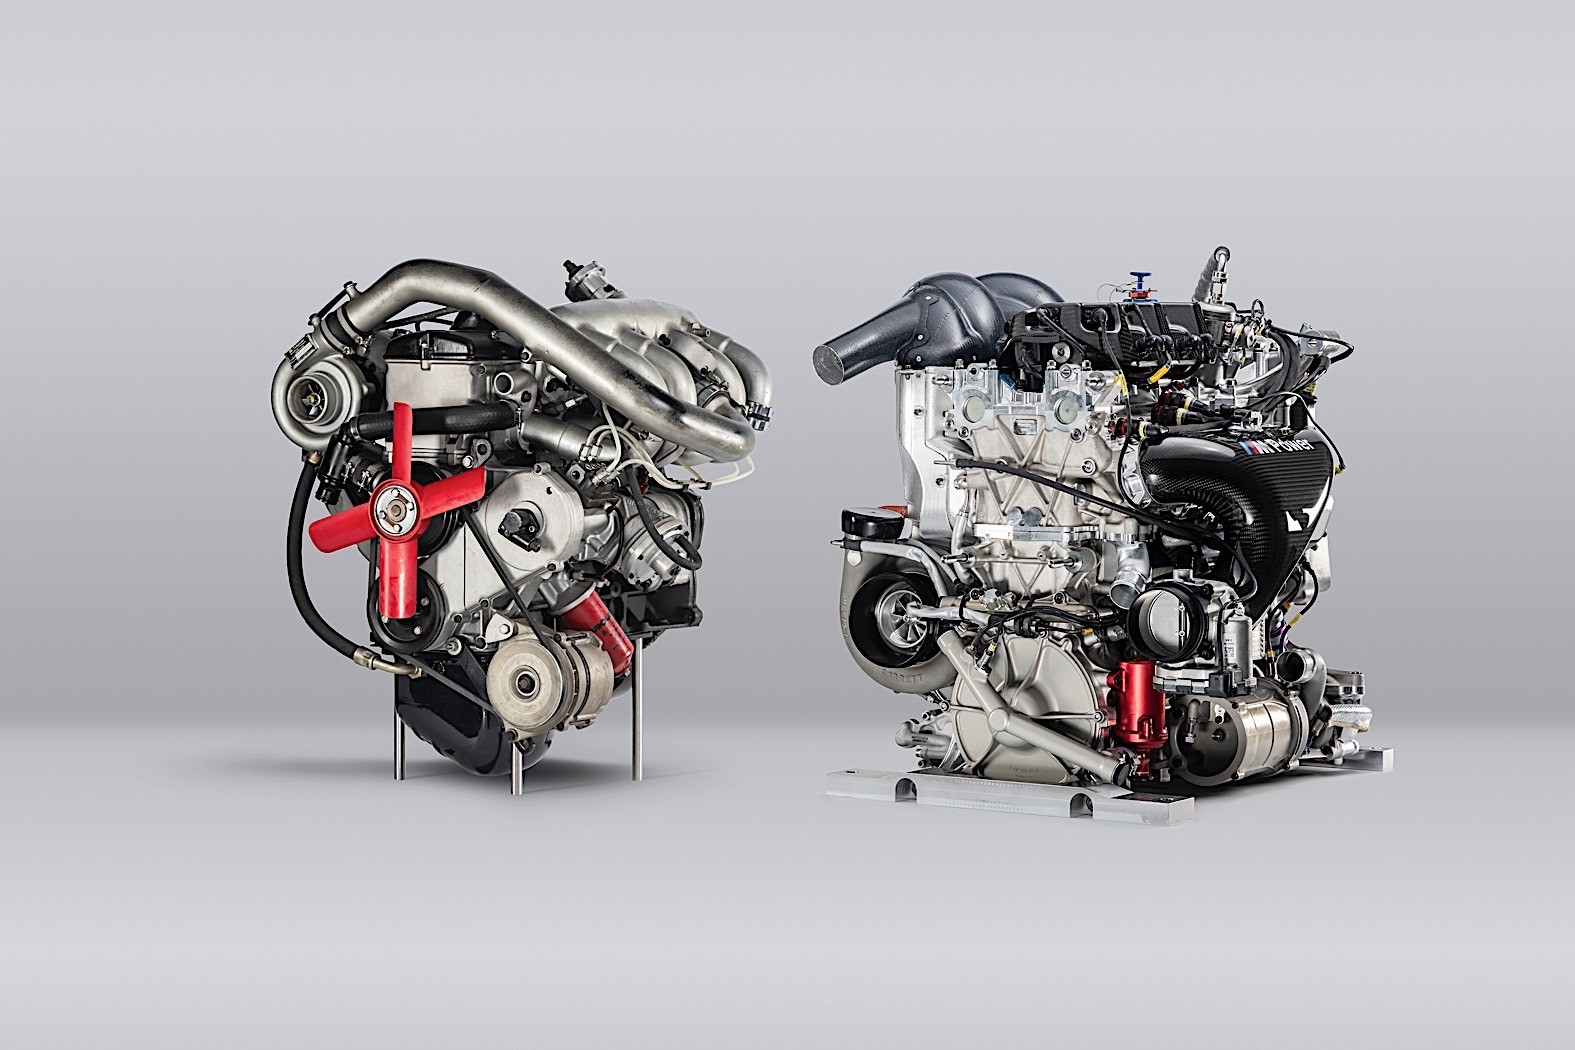 Какой двигатель лучше атмосферный или турбированный?